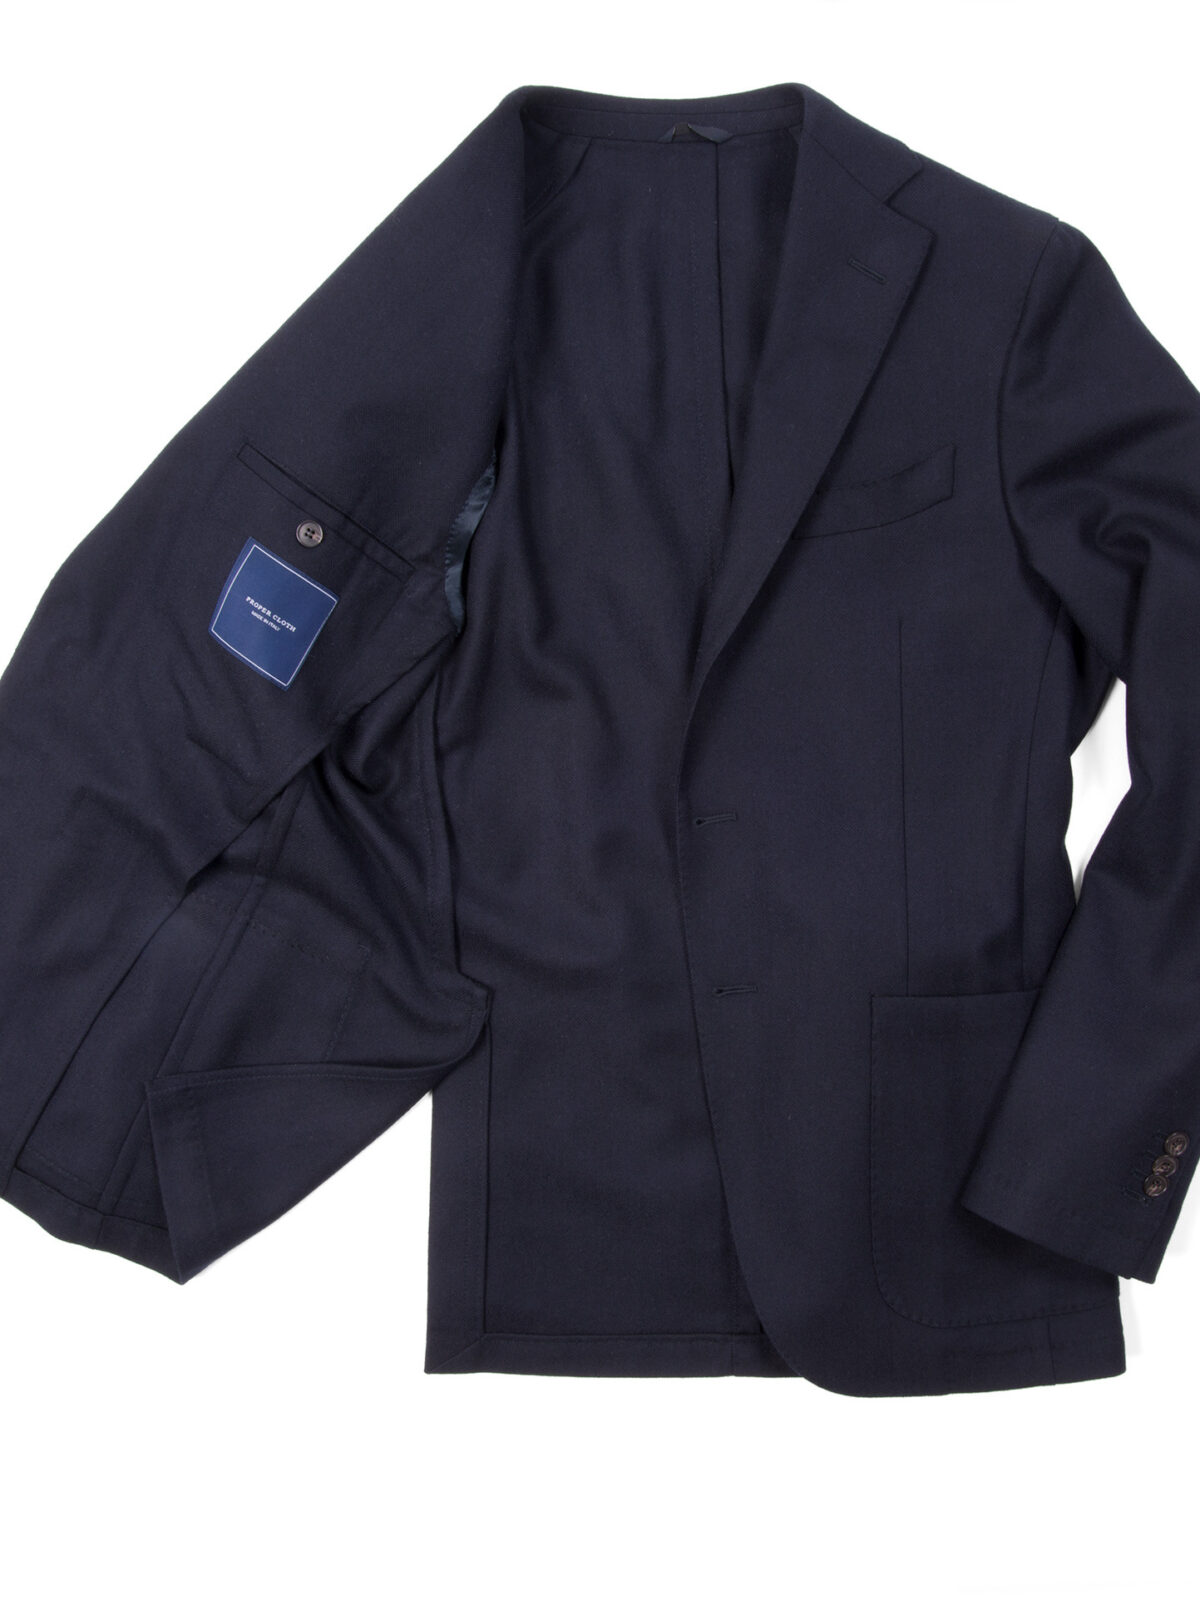 Charles Navy Herringbone Jacket